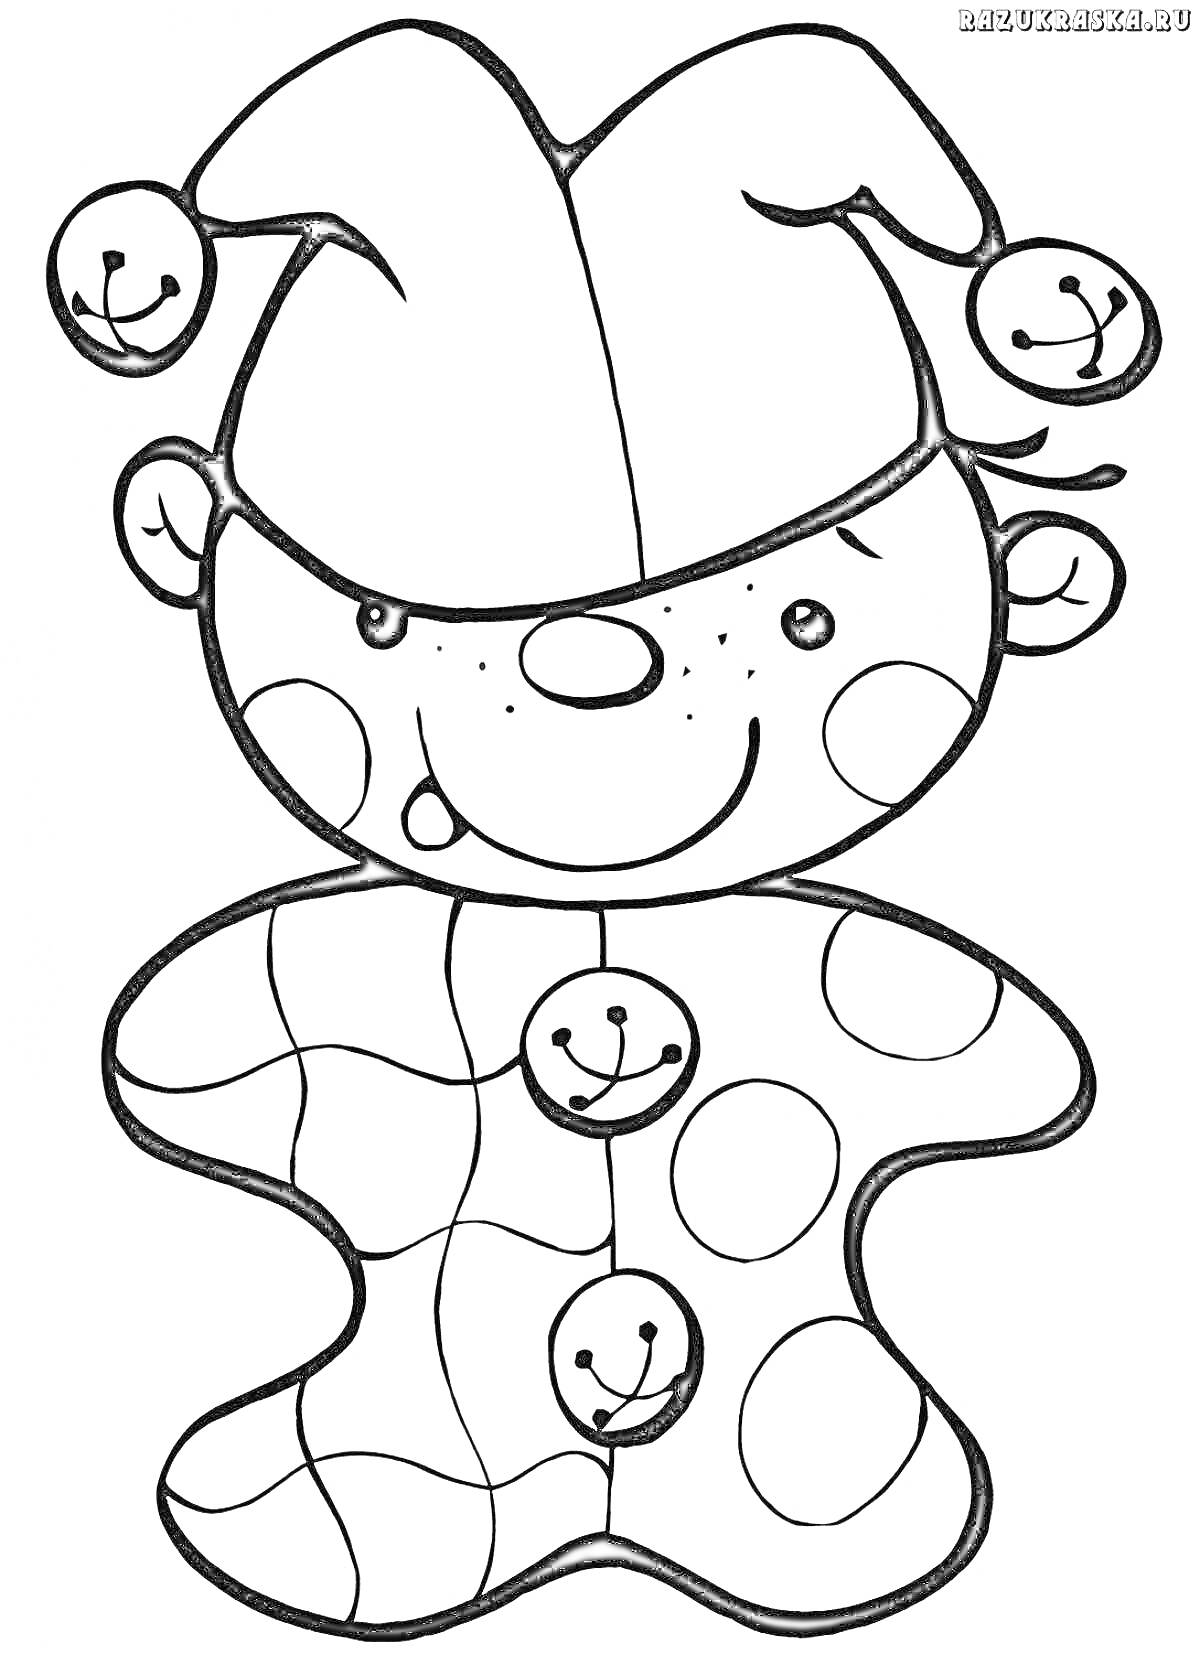 Раскраска Петрушка на картинке с колпаком и бубенцами, лицо с веснушками, одежда с узорами